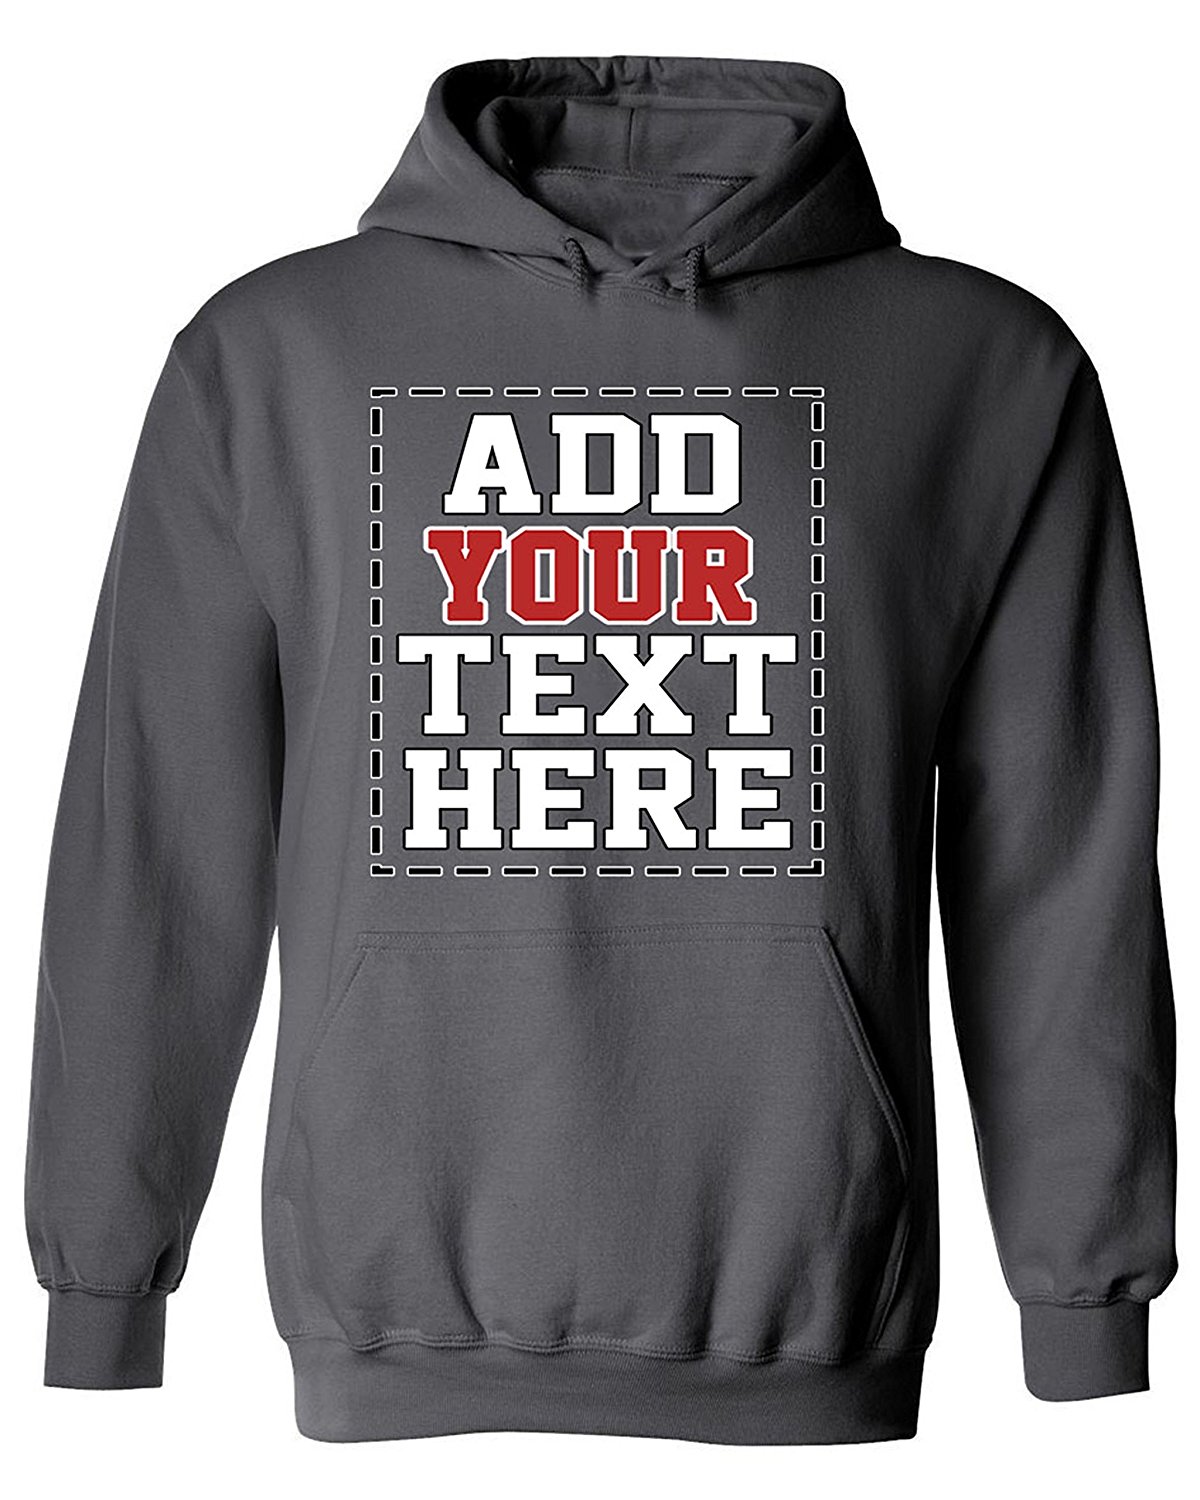 download custom sweatshirt